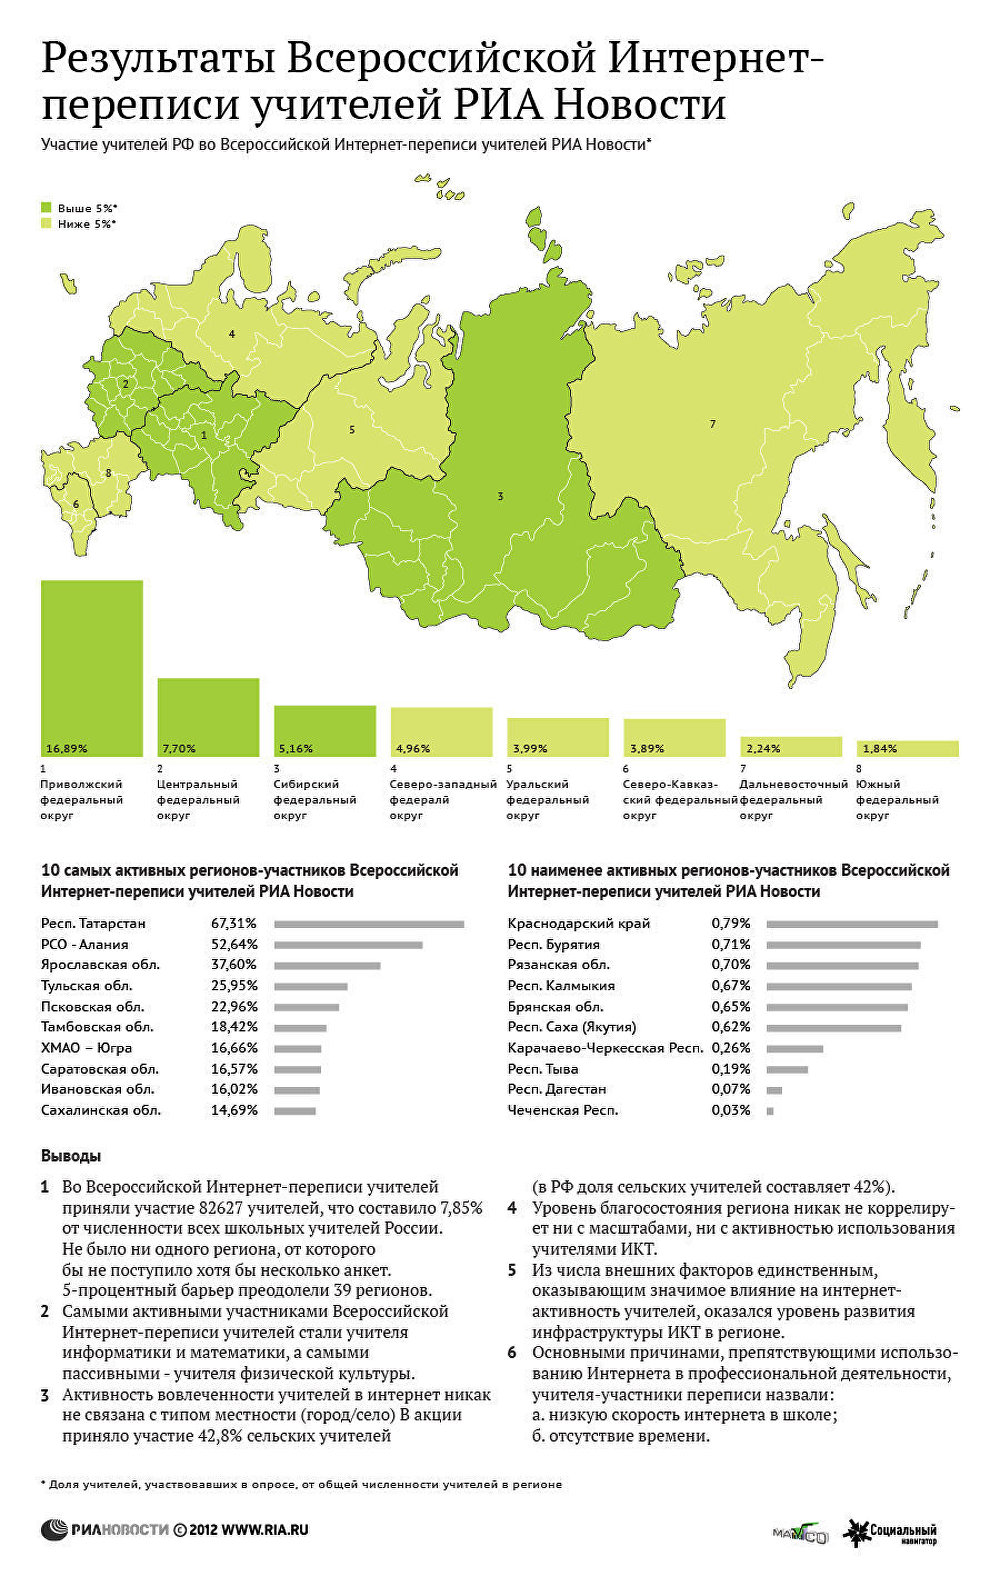 Результаты рейтинга лучших регионов РФ по интернет активности учителей